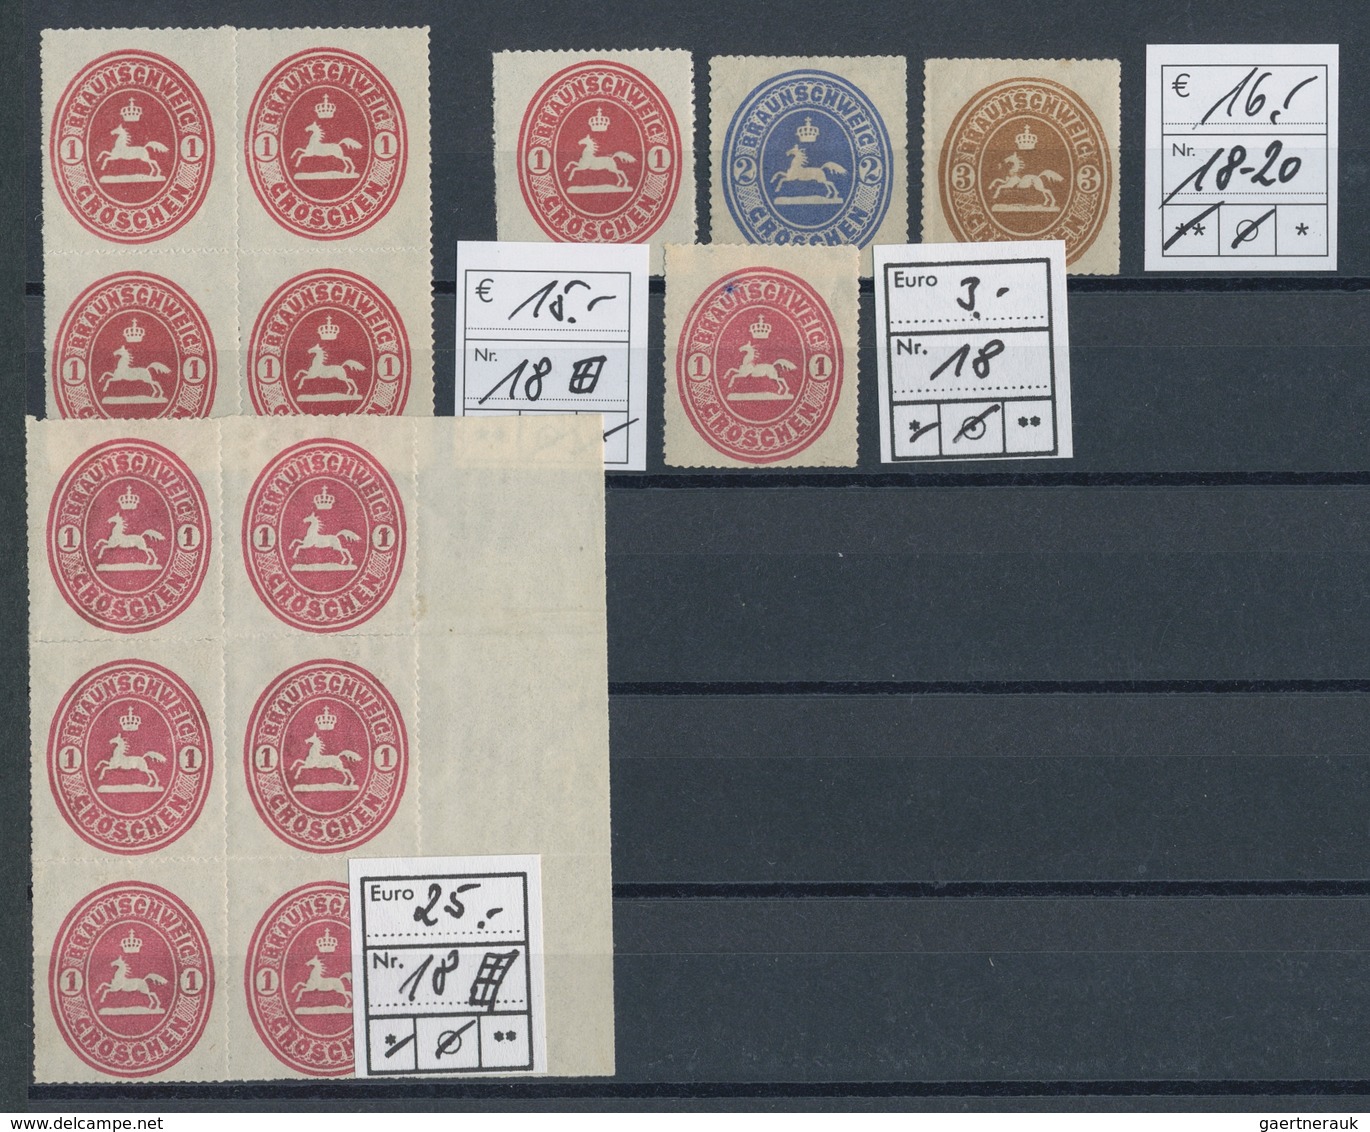 Braunschweig - Marken und Briefe: 1852-1867, reizvolle Partie von über 90 Werten auf Steckkarten, üb